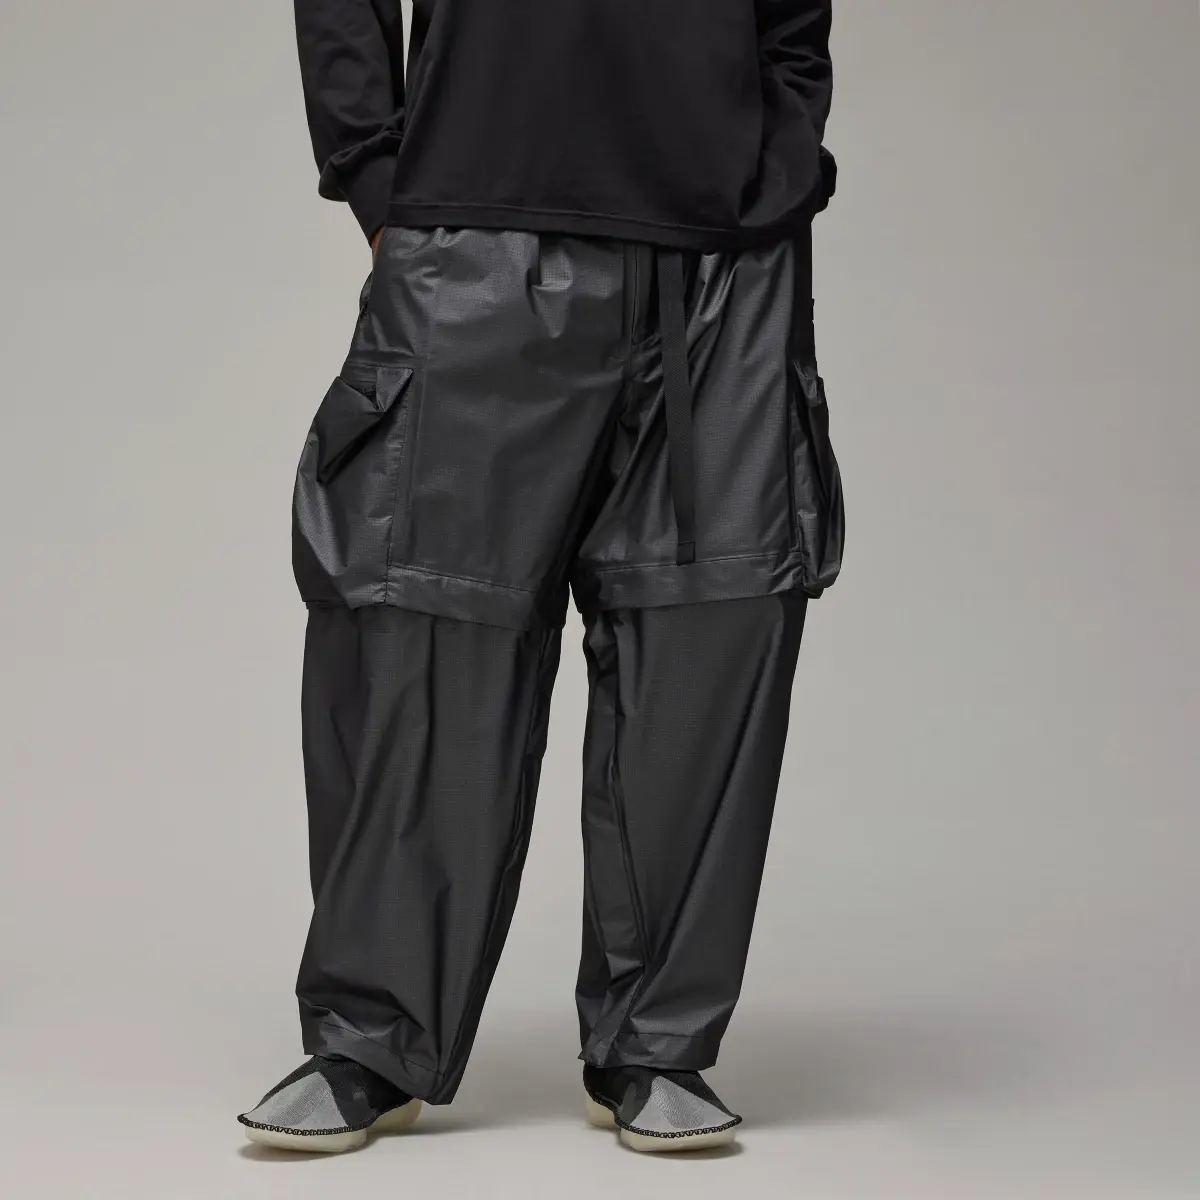 Adidas Spodnie Y-3 GORE-TEX. 1